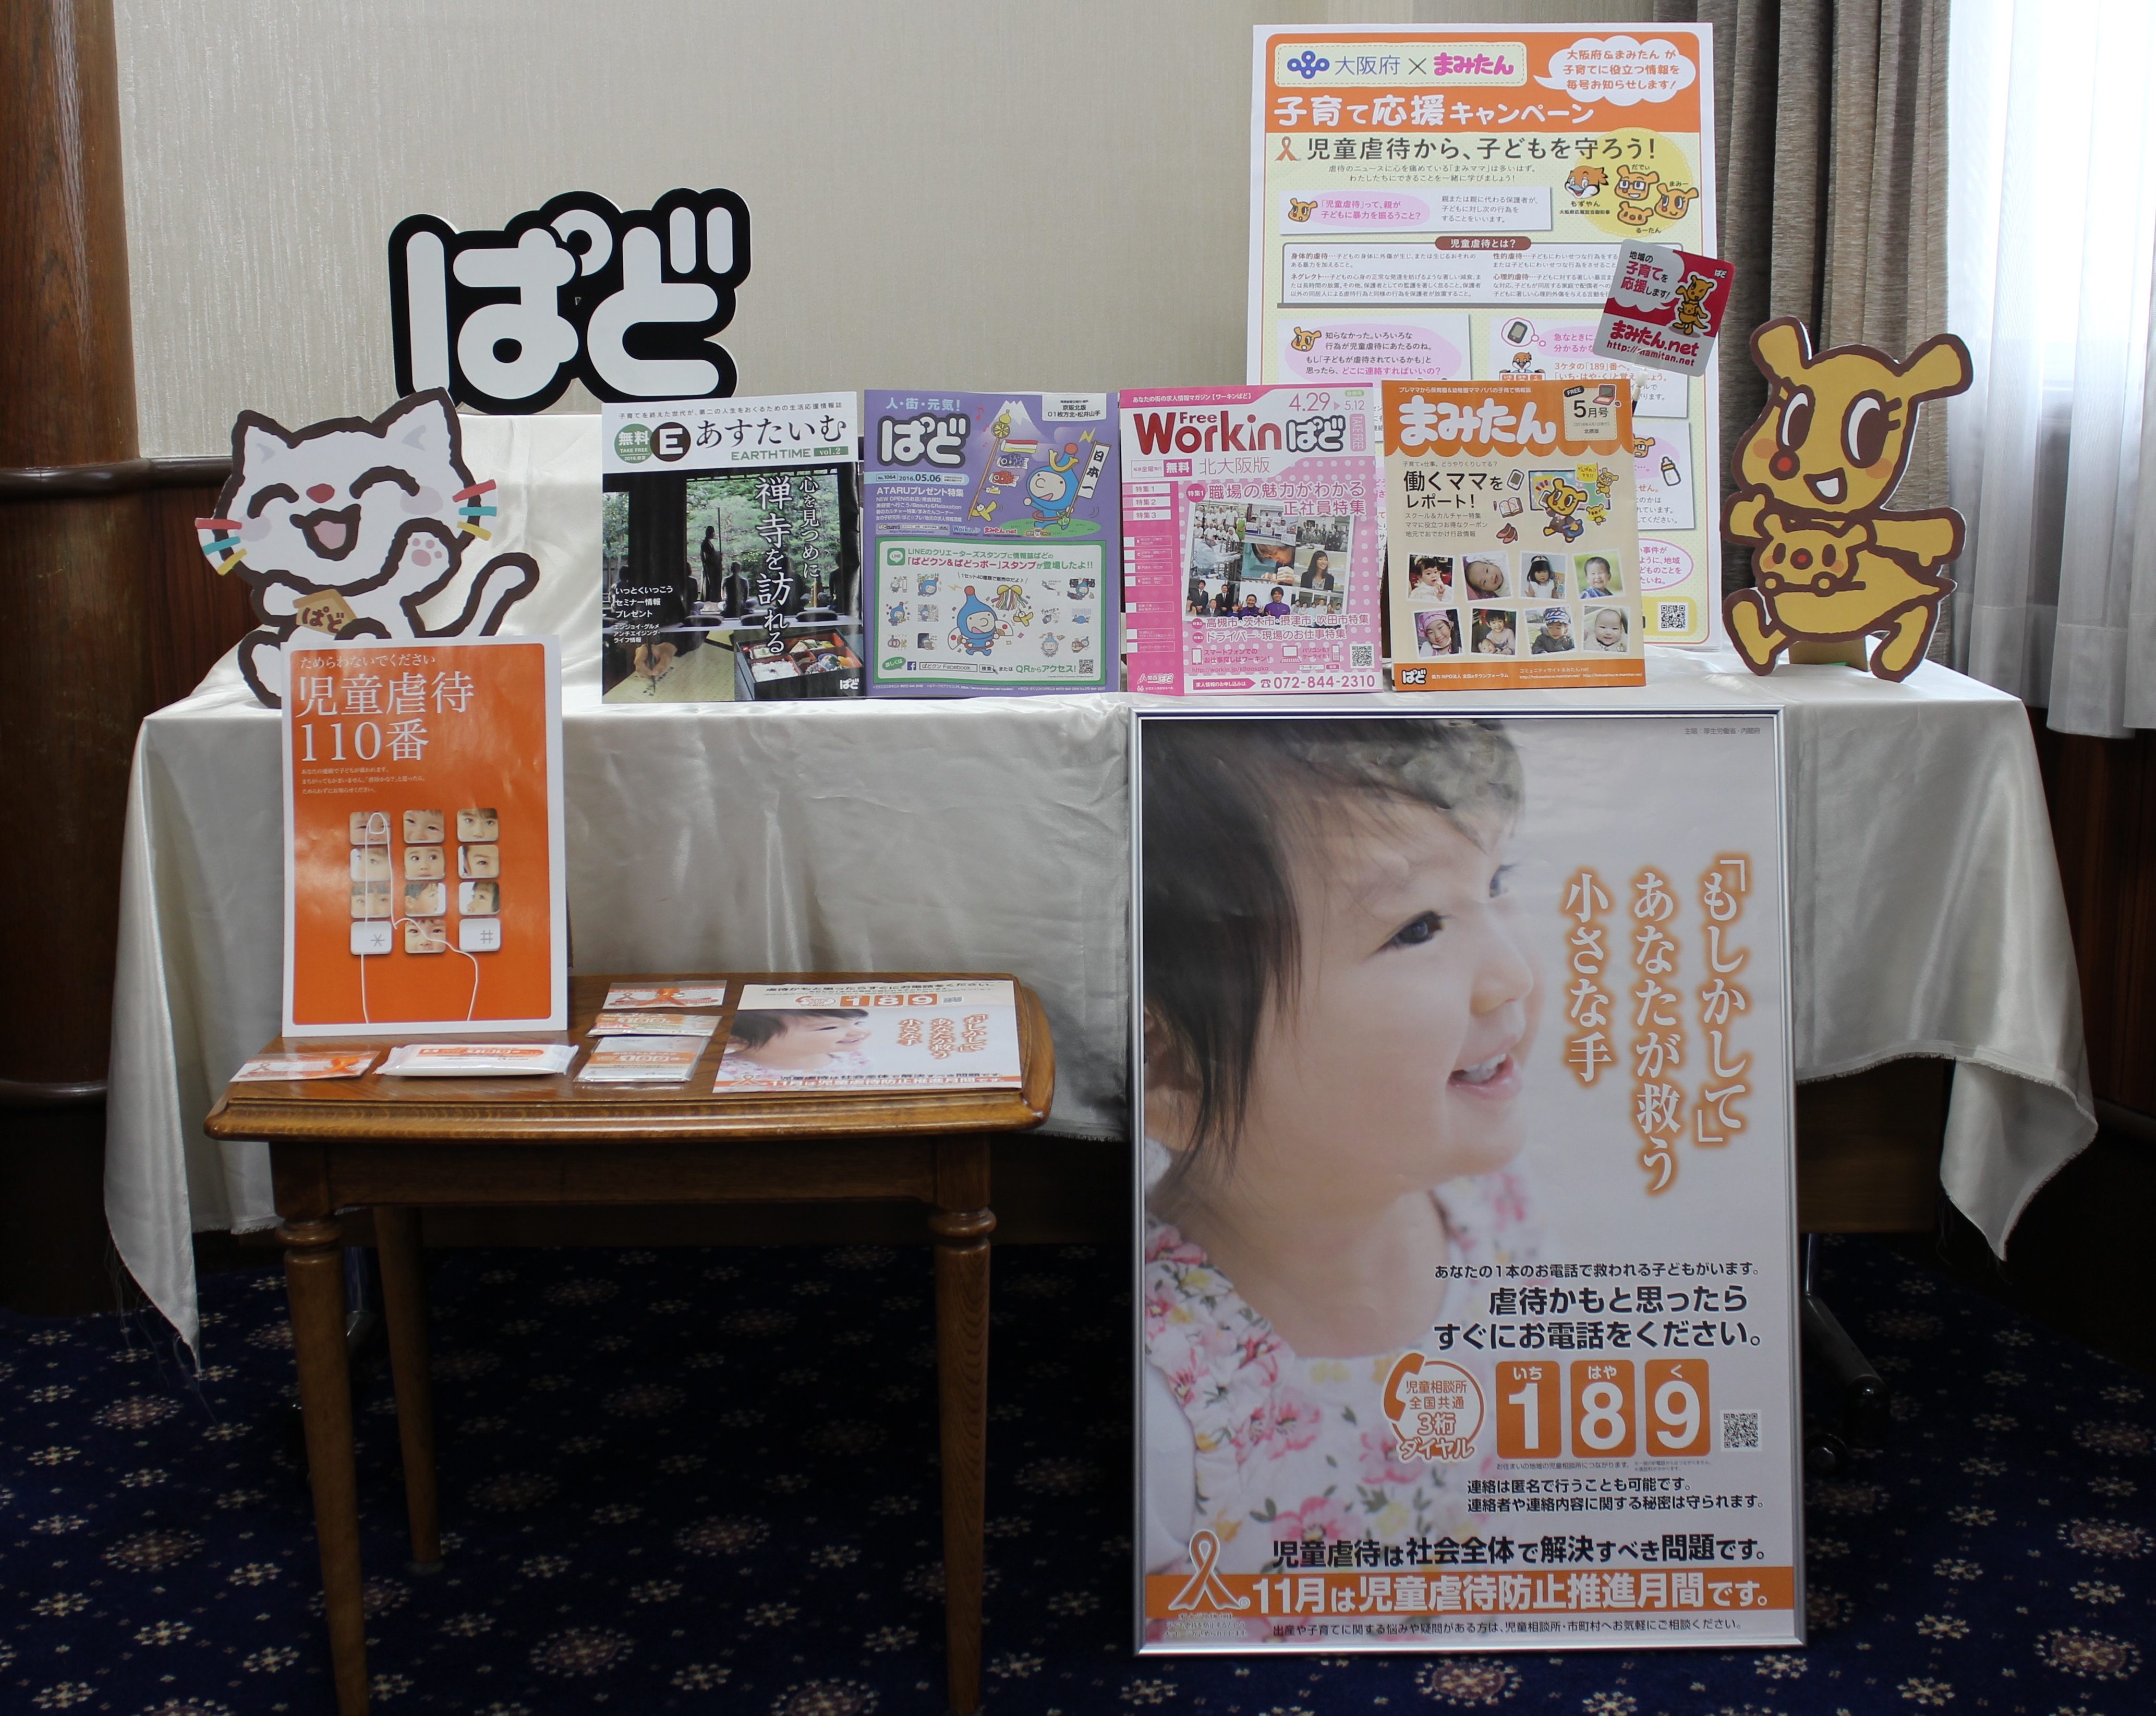 ぱどが発行している冊子と、大阪府×まみたんコラボキャンペーン「児童虐待防止」の記事です。取材陣の方がたくさん写真を撮られていました。